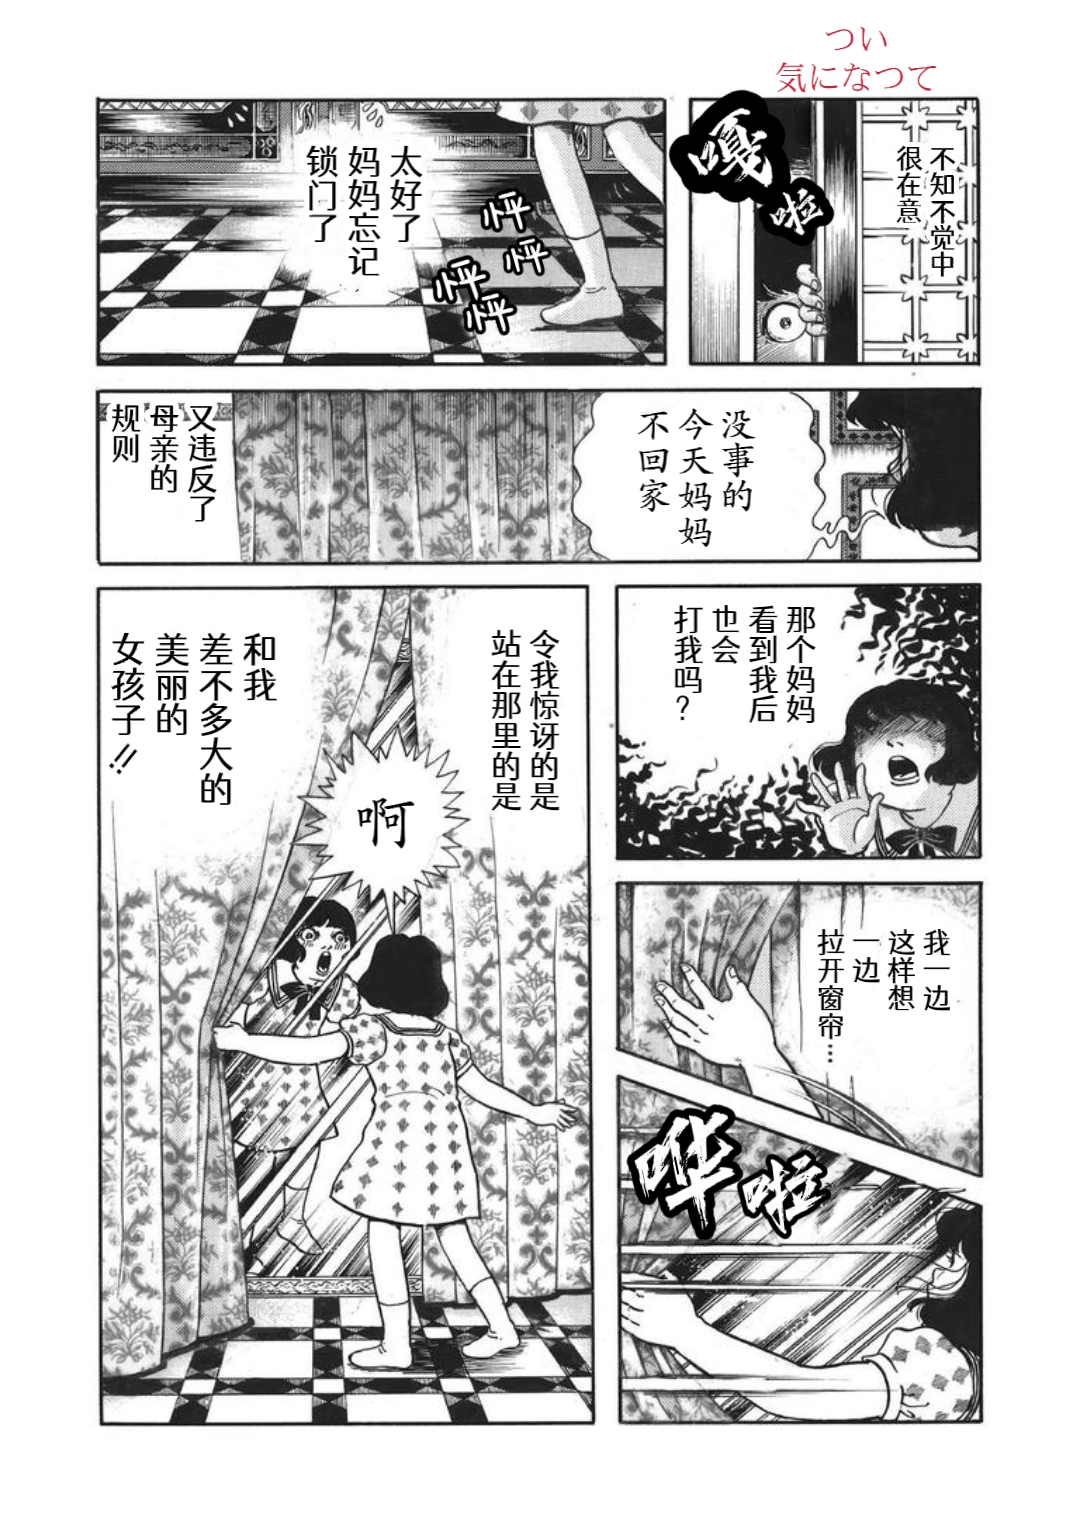 犬木加奈子的大人向恐怖童話 - 皇后的魔鏡 - 3